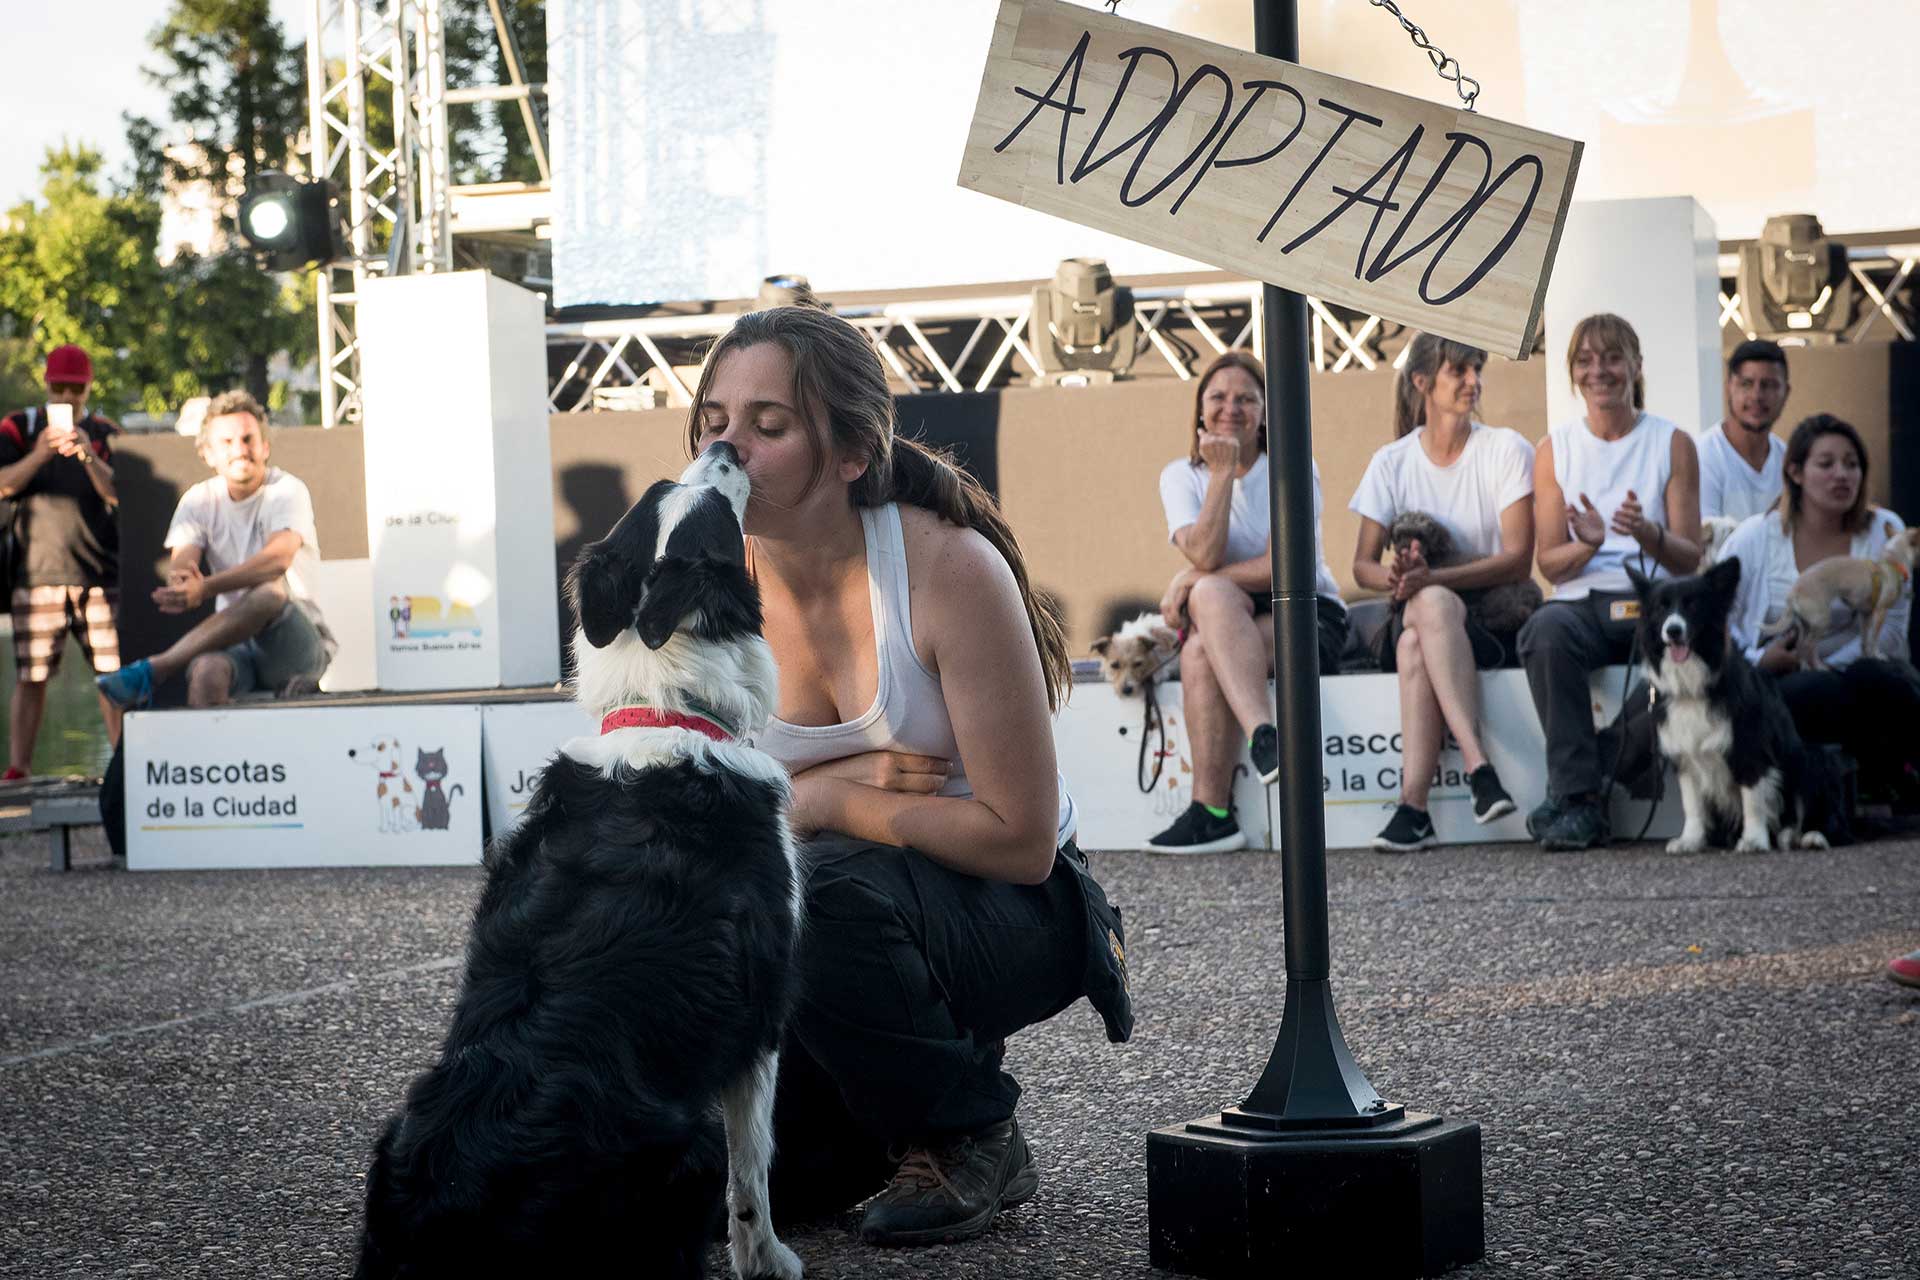 Fotografía de una las participantes en cuclillas besando a su mascota en primer plano, de fondo parte de los otros participantes sentados en el escenario. Cobertura del evento 'Mascotas de la Ciudad', organizado por el Gobierno de la Ciudad Autónoma de Buenos Aires